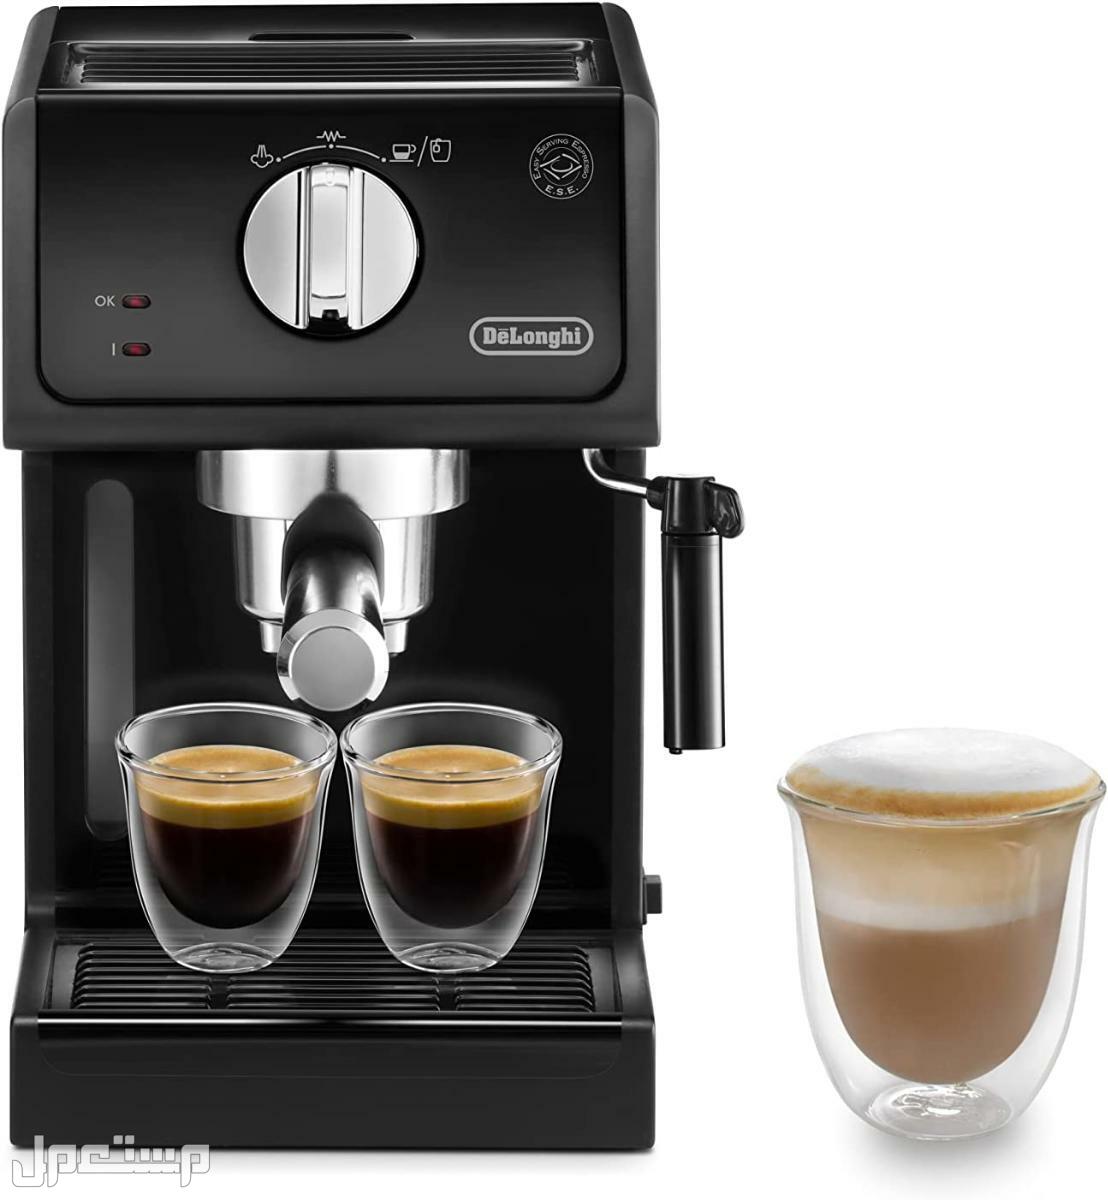 عيوب ومميزات ومواصفات وسعر ماكينة قهوة ديلونجى ديديكا في السودان لماذا عليك شراء ماكينة قهوة ديلونجي ديديكا ؟